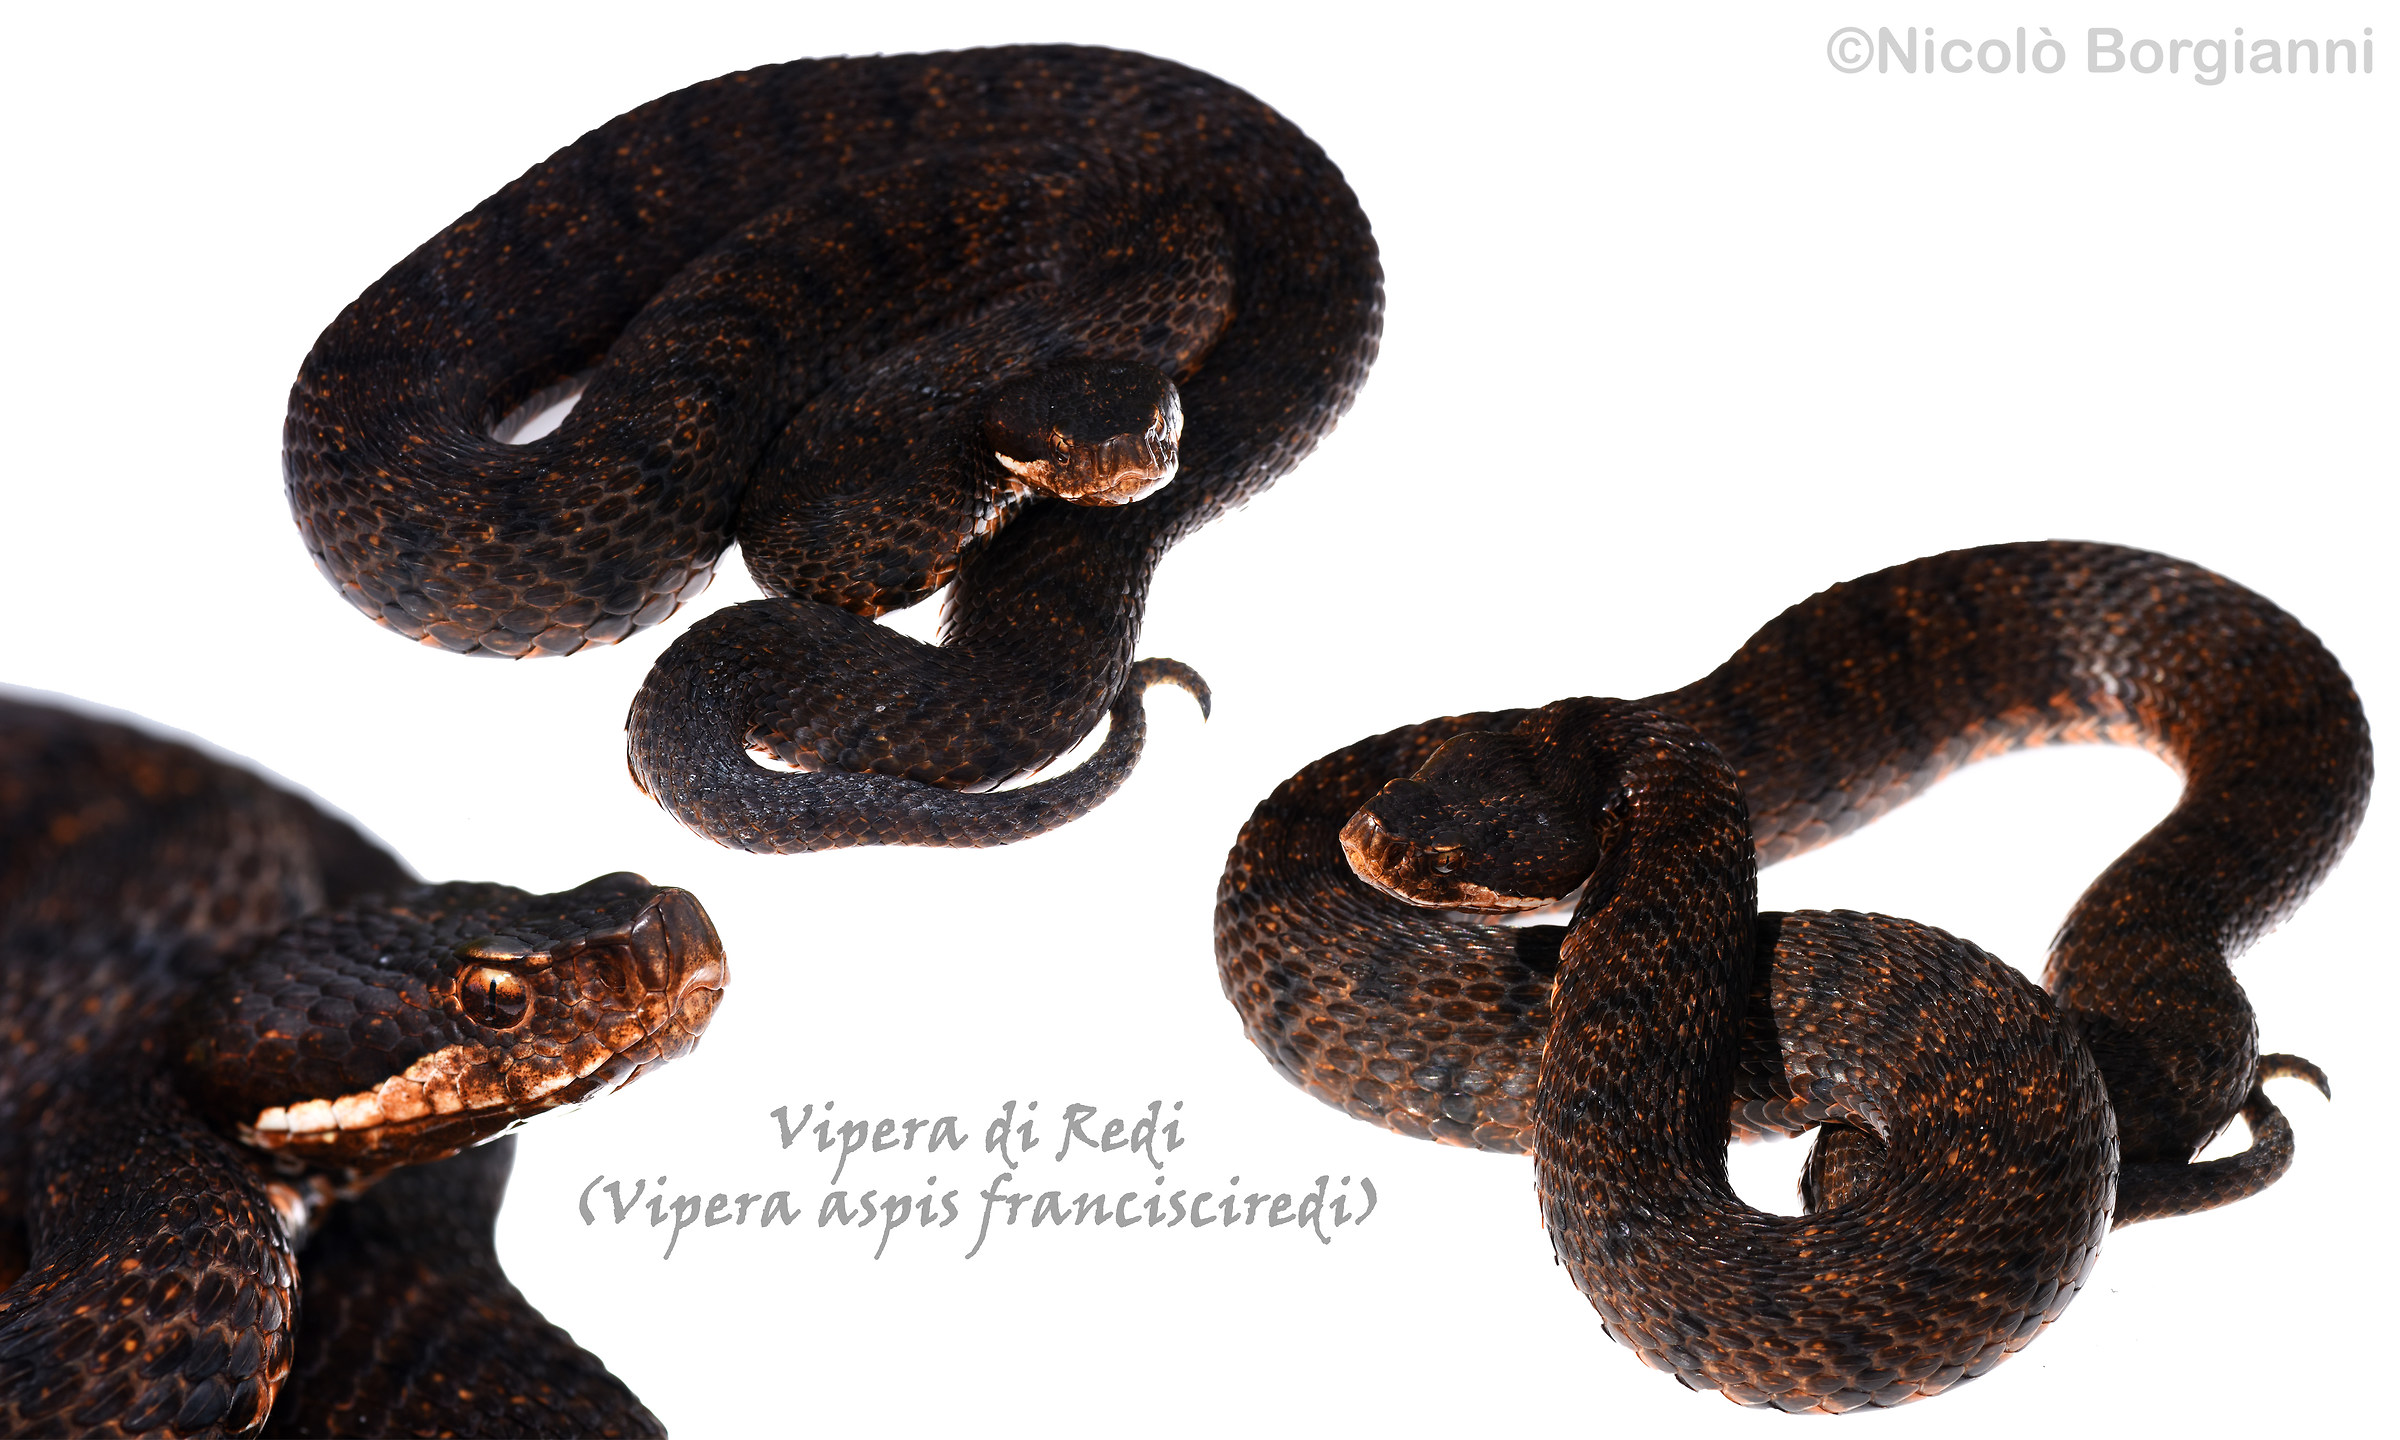 Vipera of Redi (melanotic specimen)...